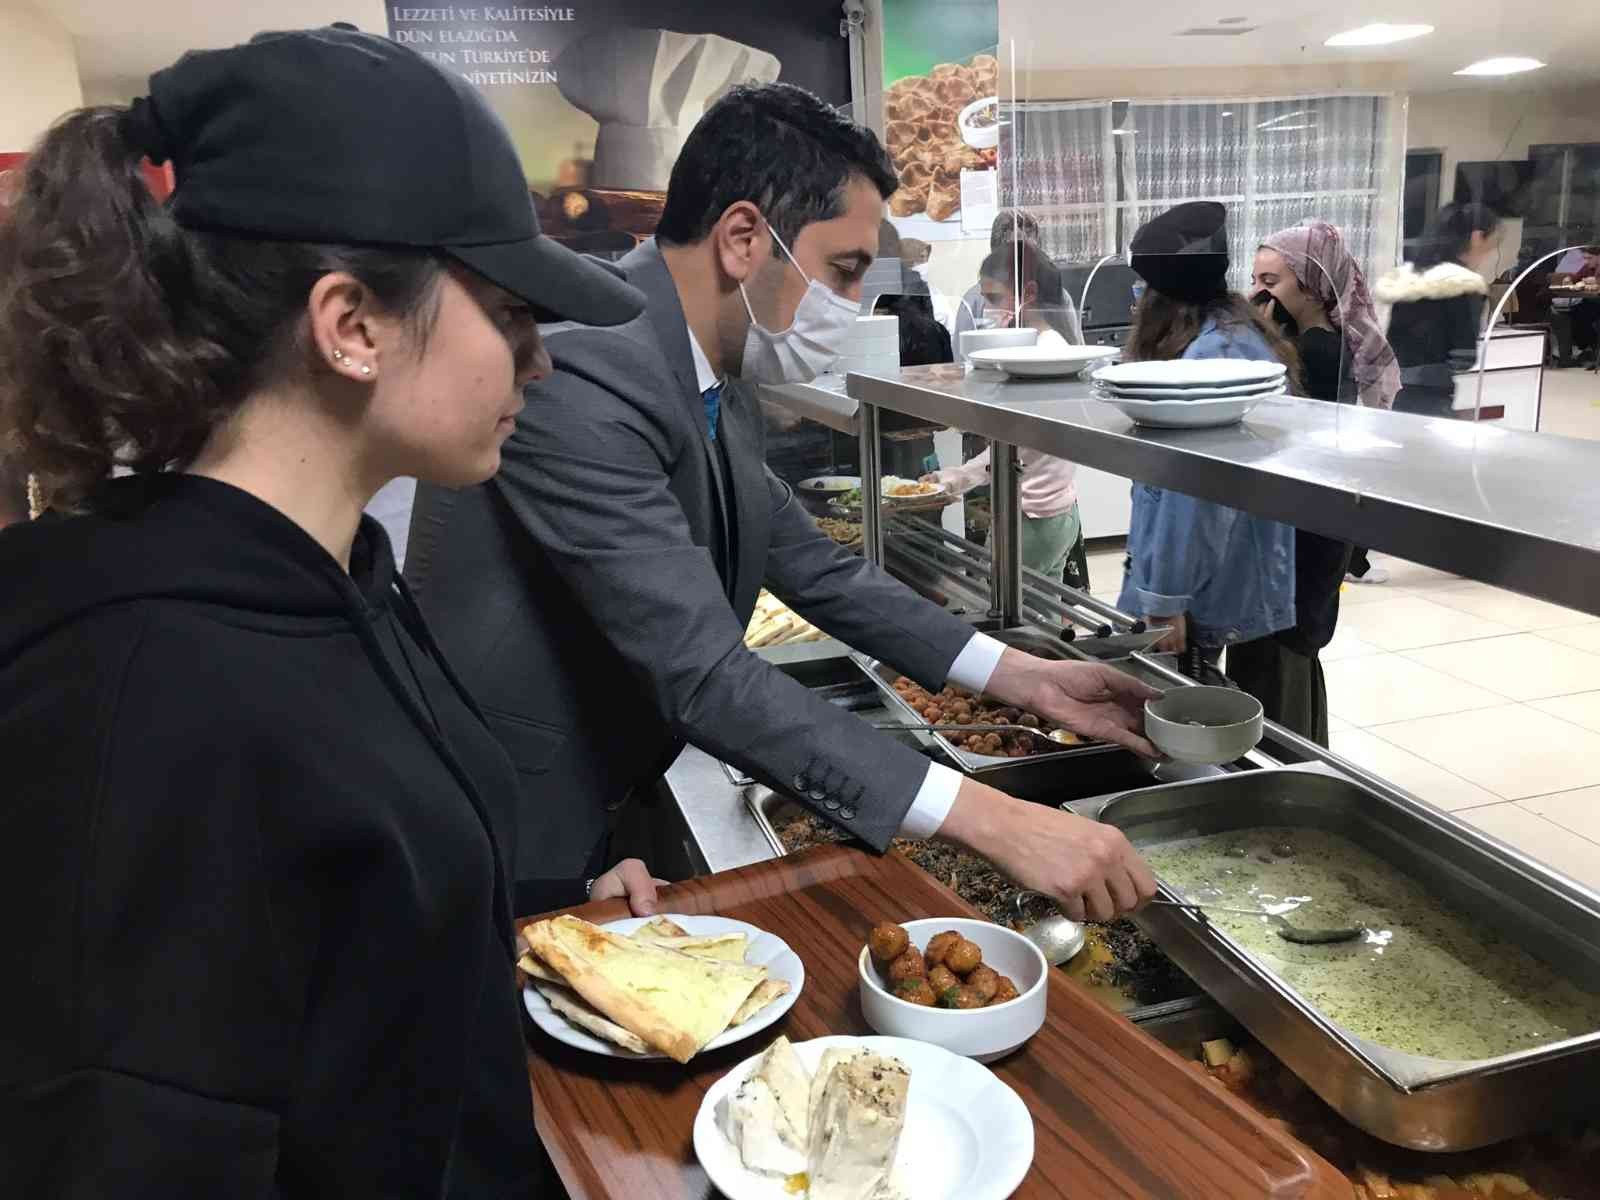 Elazığ’da öğrenciler her ayın 23’ünde yöresel yemeklerle buluşacak #elazig